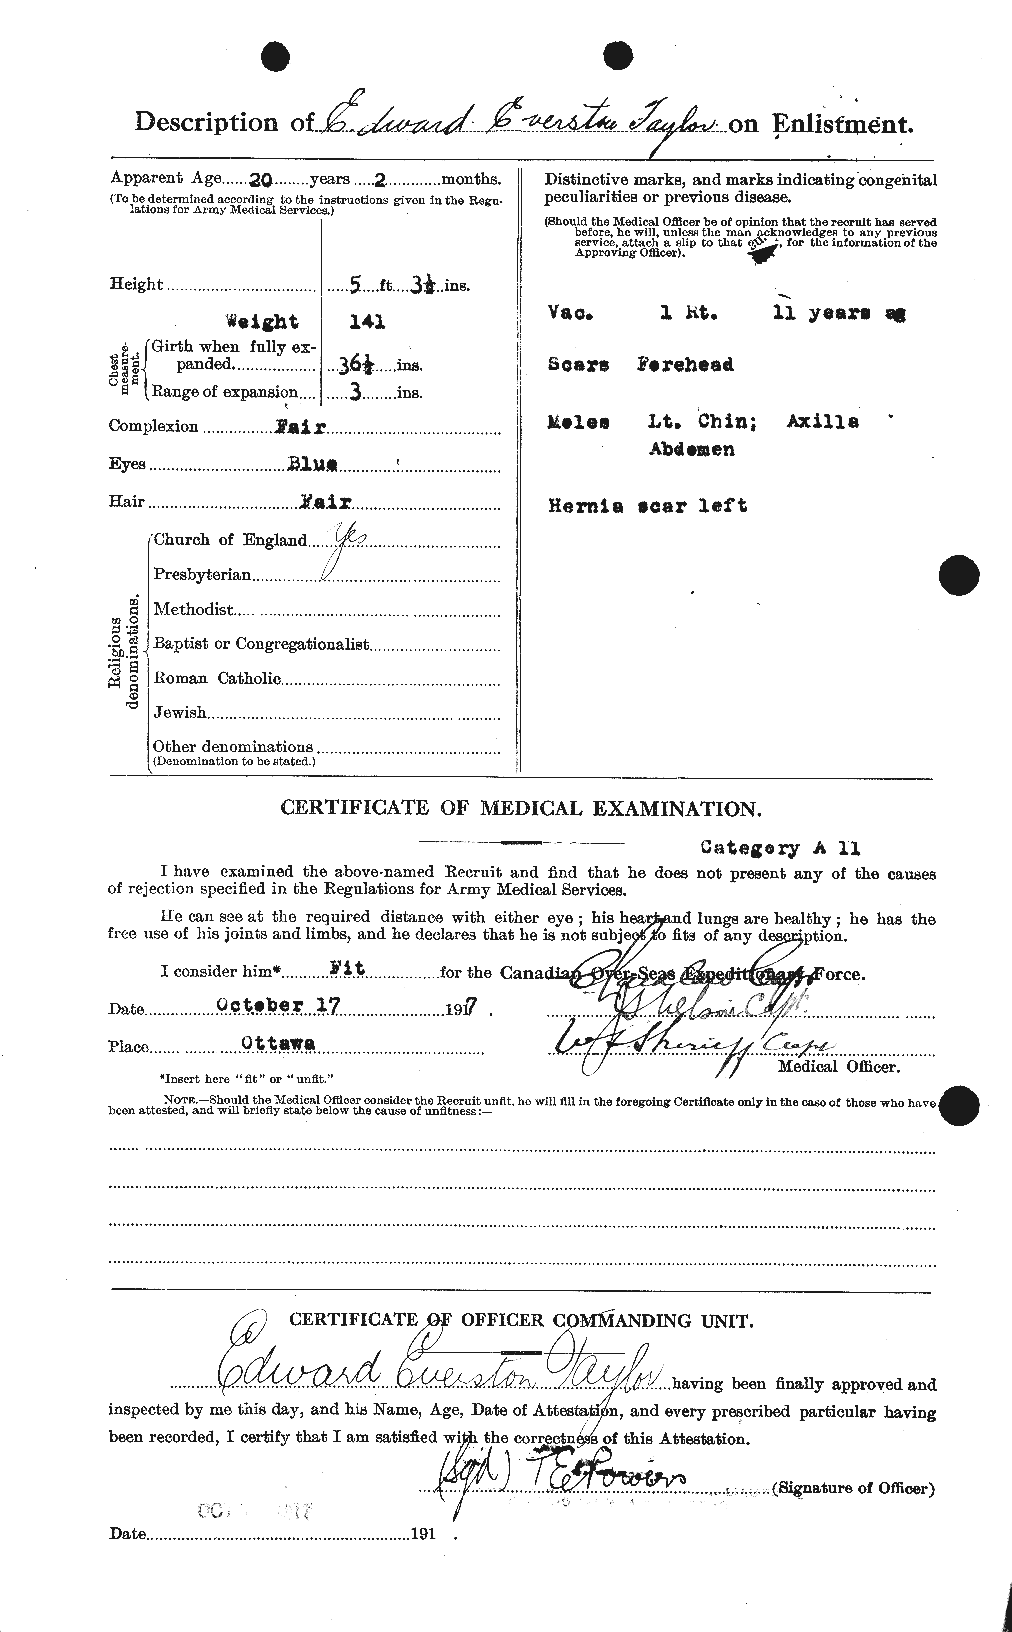 Dossiers du Personnel de la Première Guerre mondiale - CEC 627310b